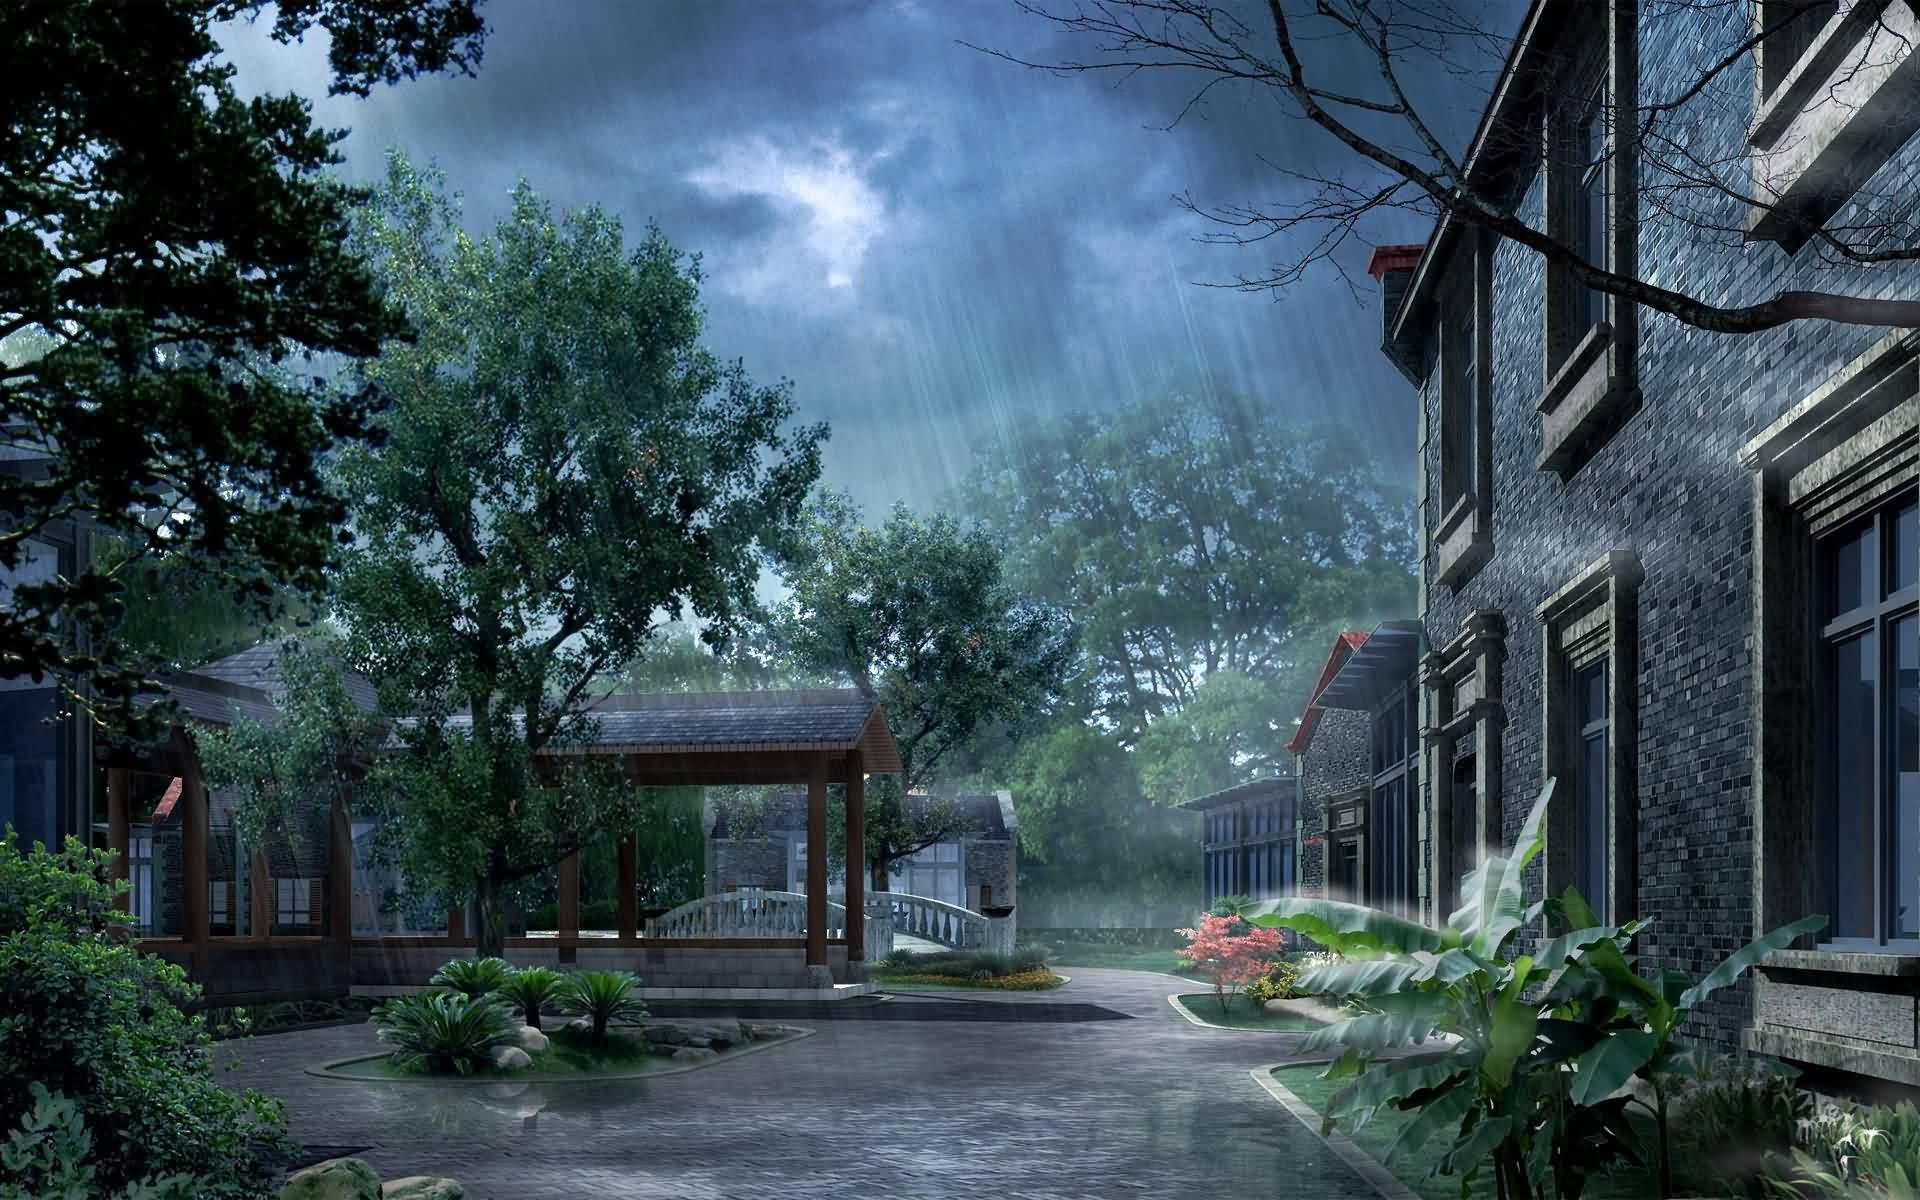 Rainy Weather Landscape Wallpaper